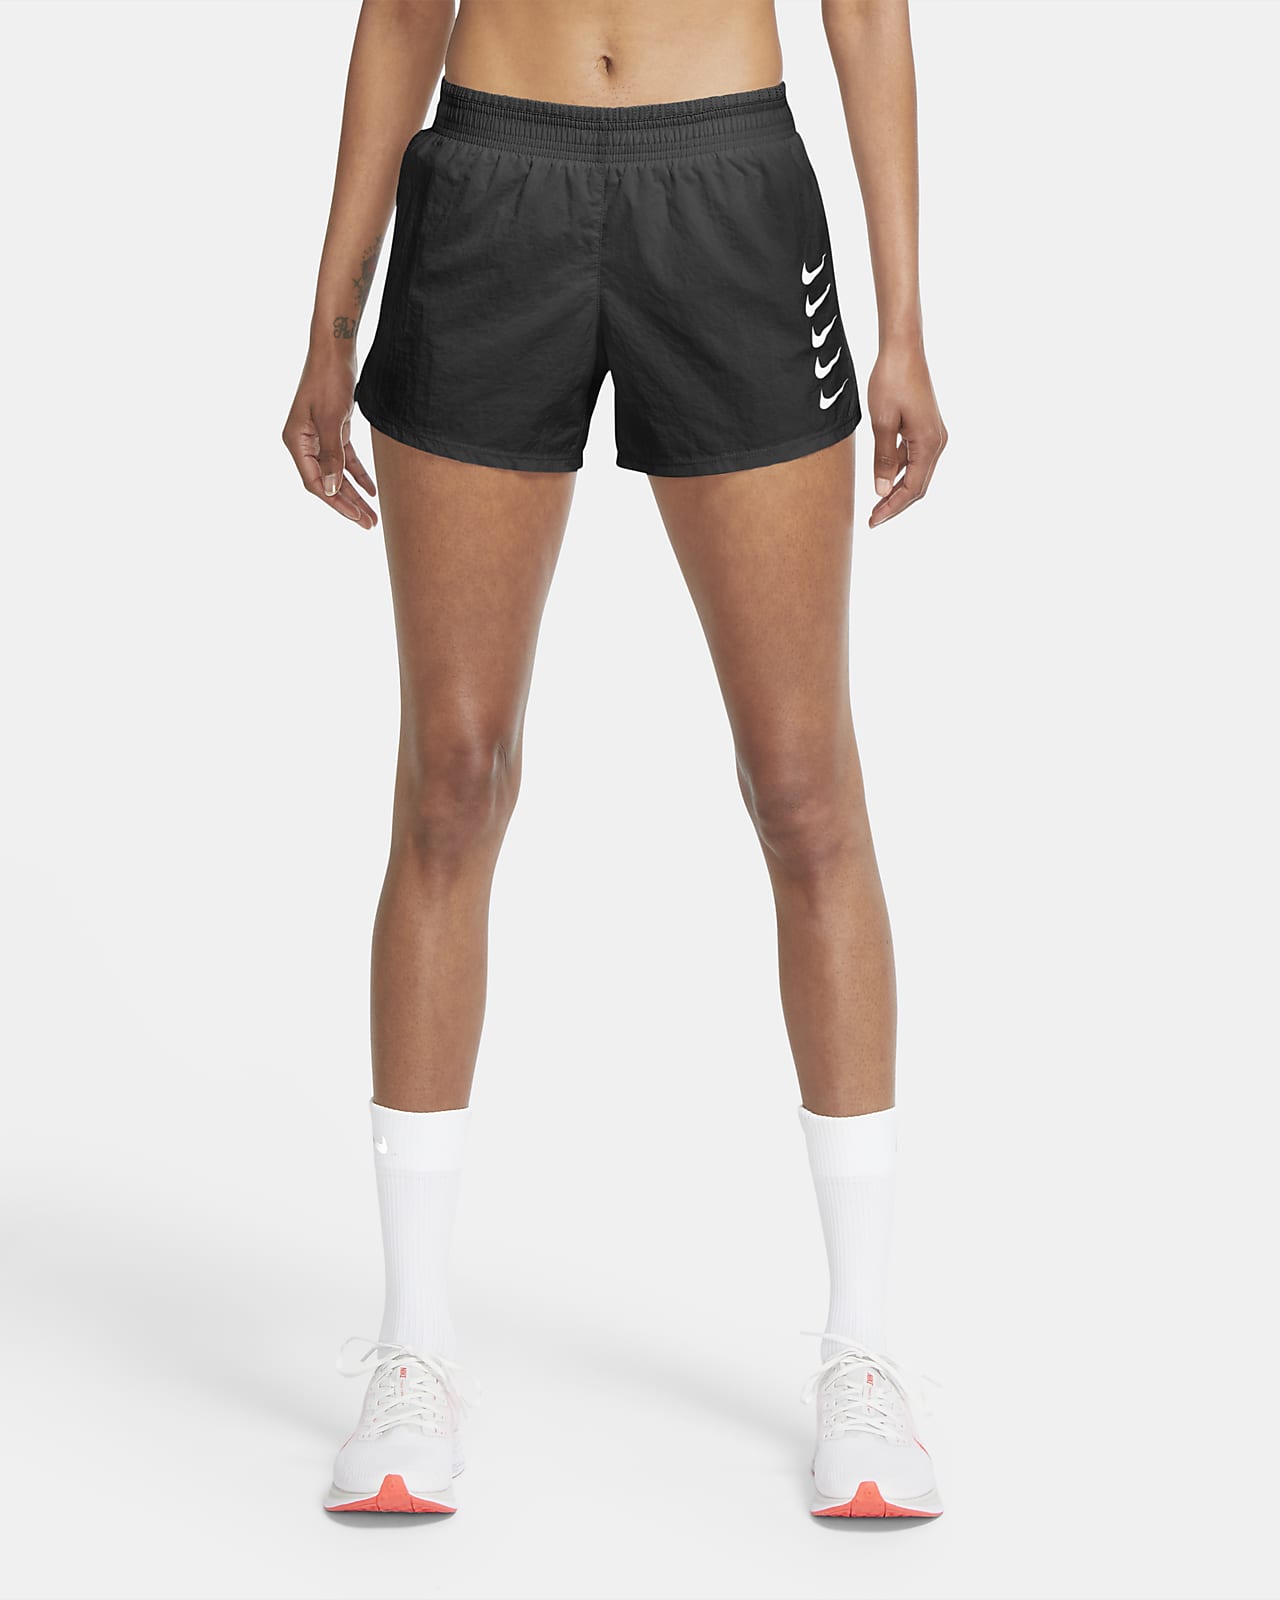 nike womens running shorts